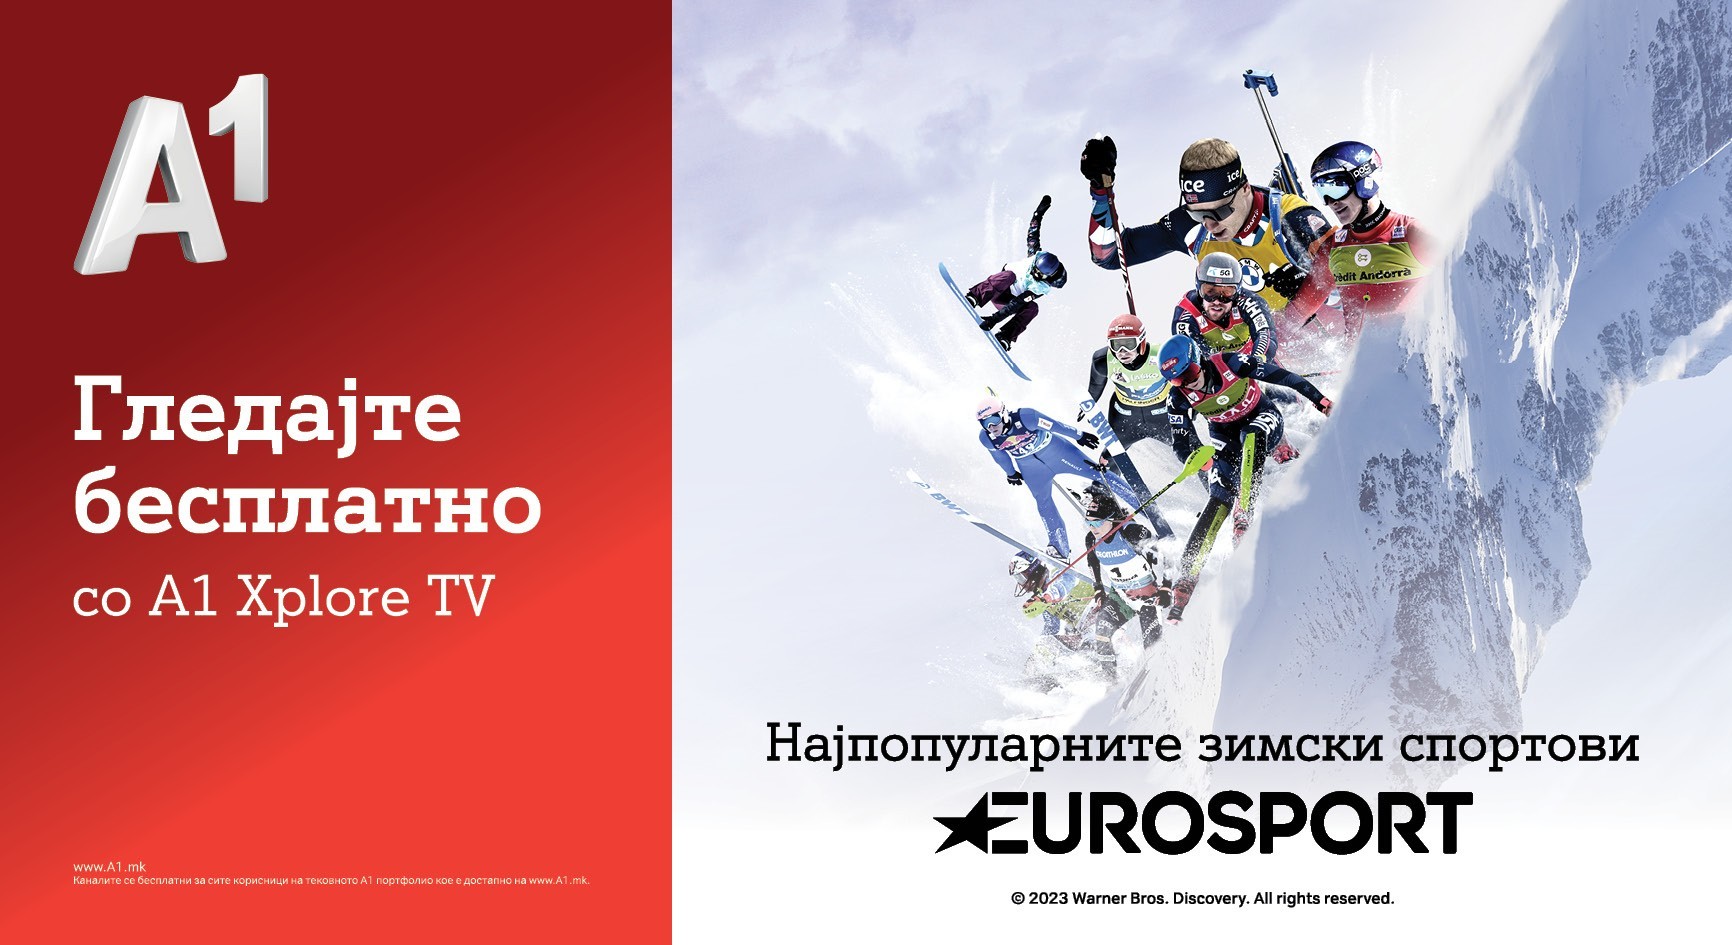 А1 Македонија воведува нови канали на А1 Xplore ТV - Eurosport, Discovery и TLC бесплатно со А1